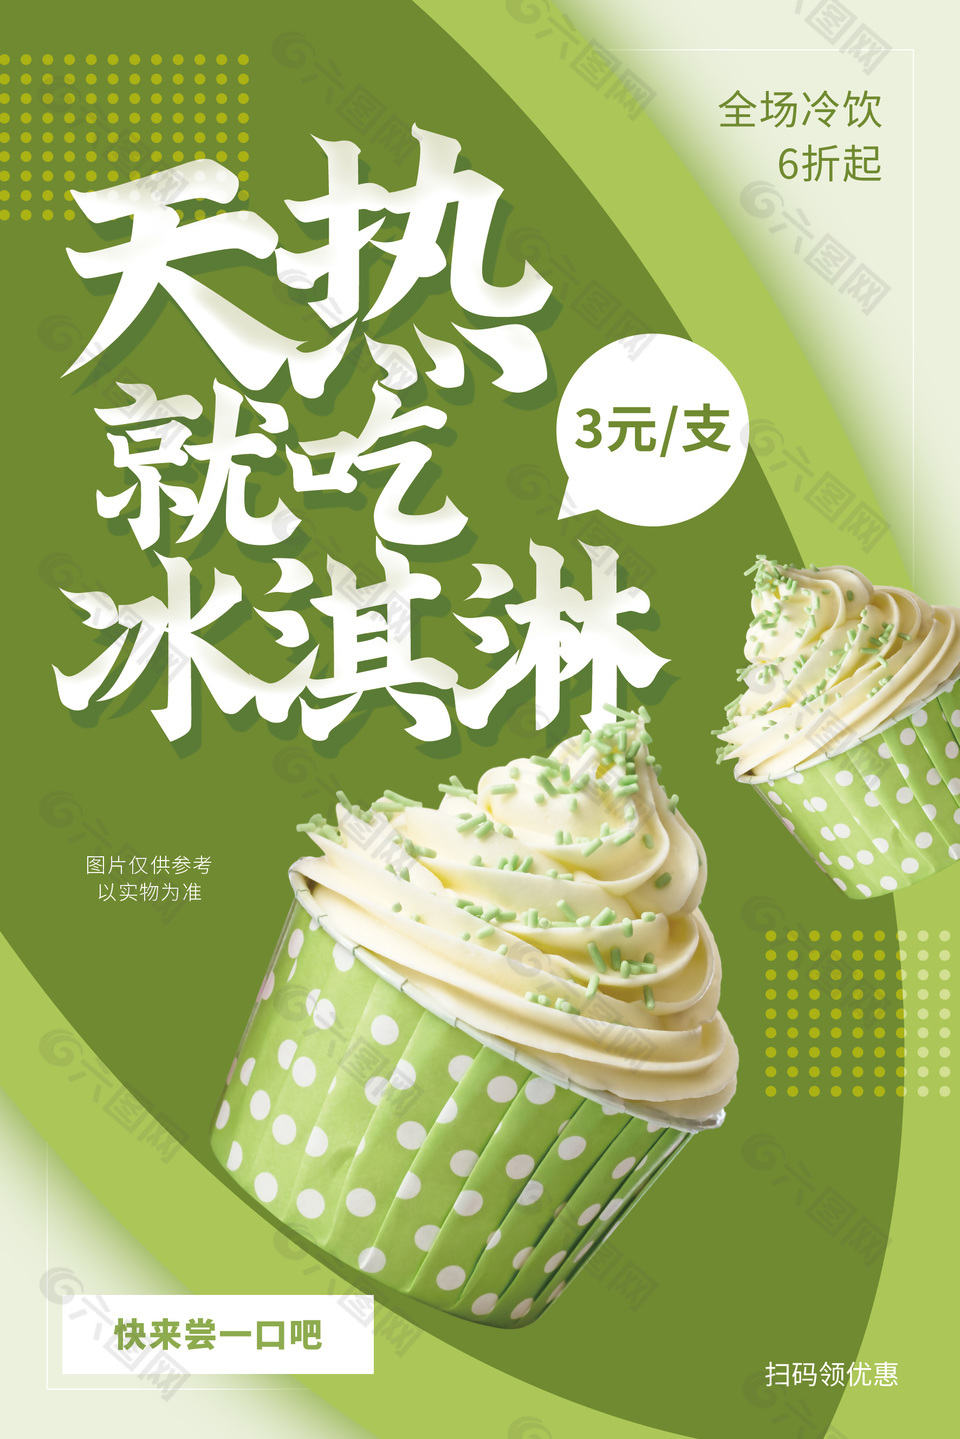 浅绿主题冰淇淋海报设计